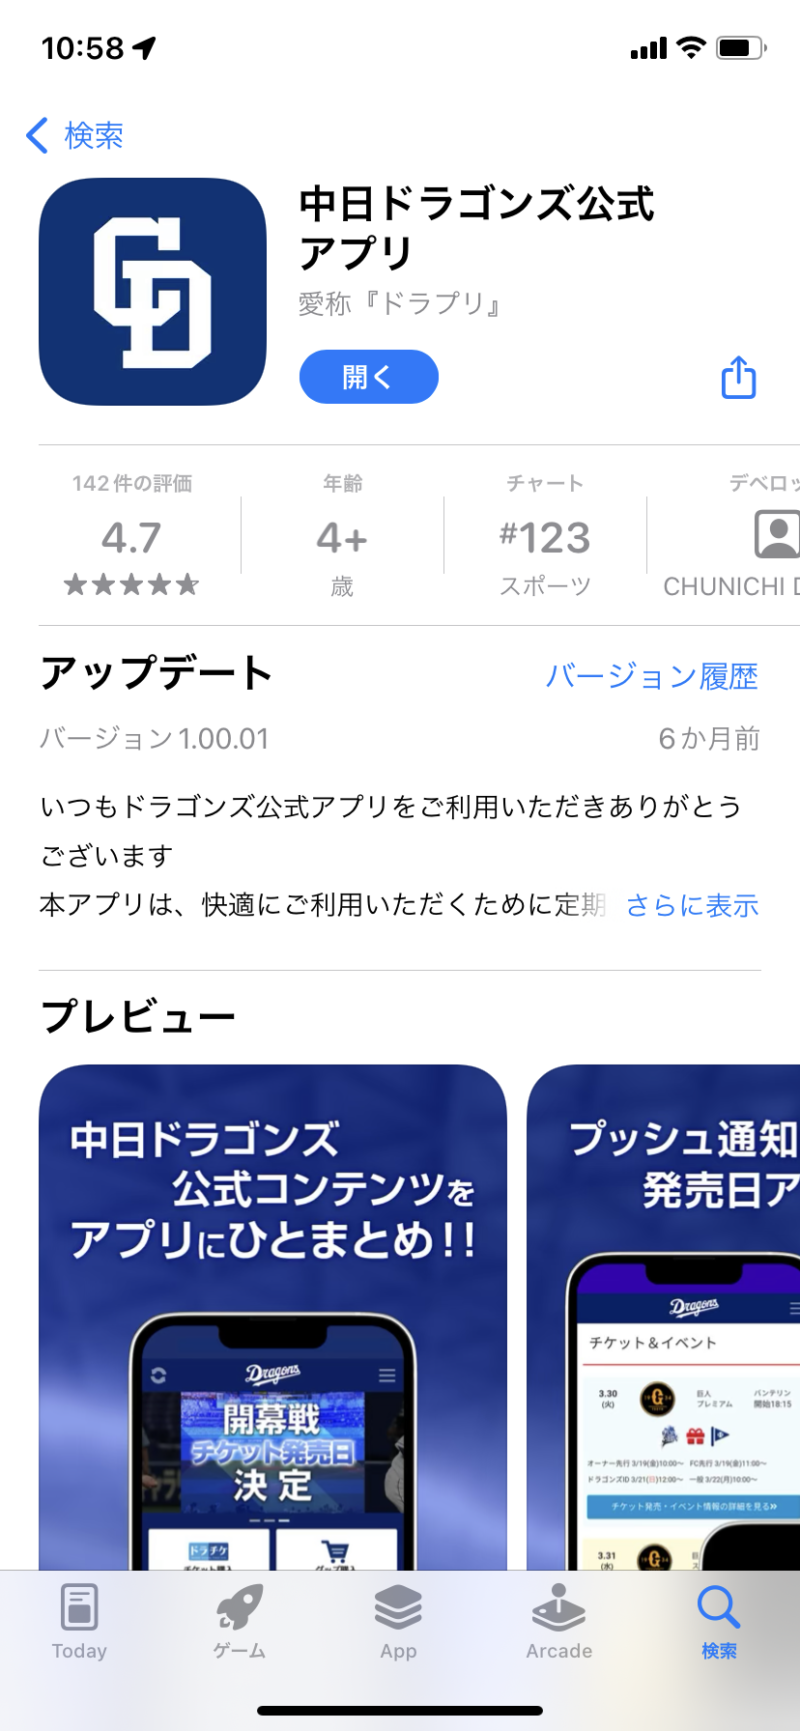 中日ドラゾンズアプリ